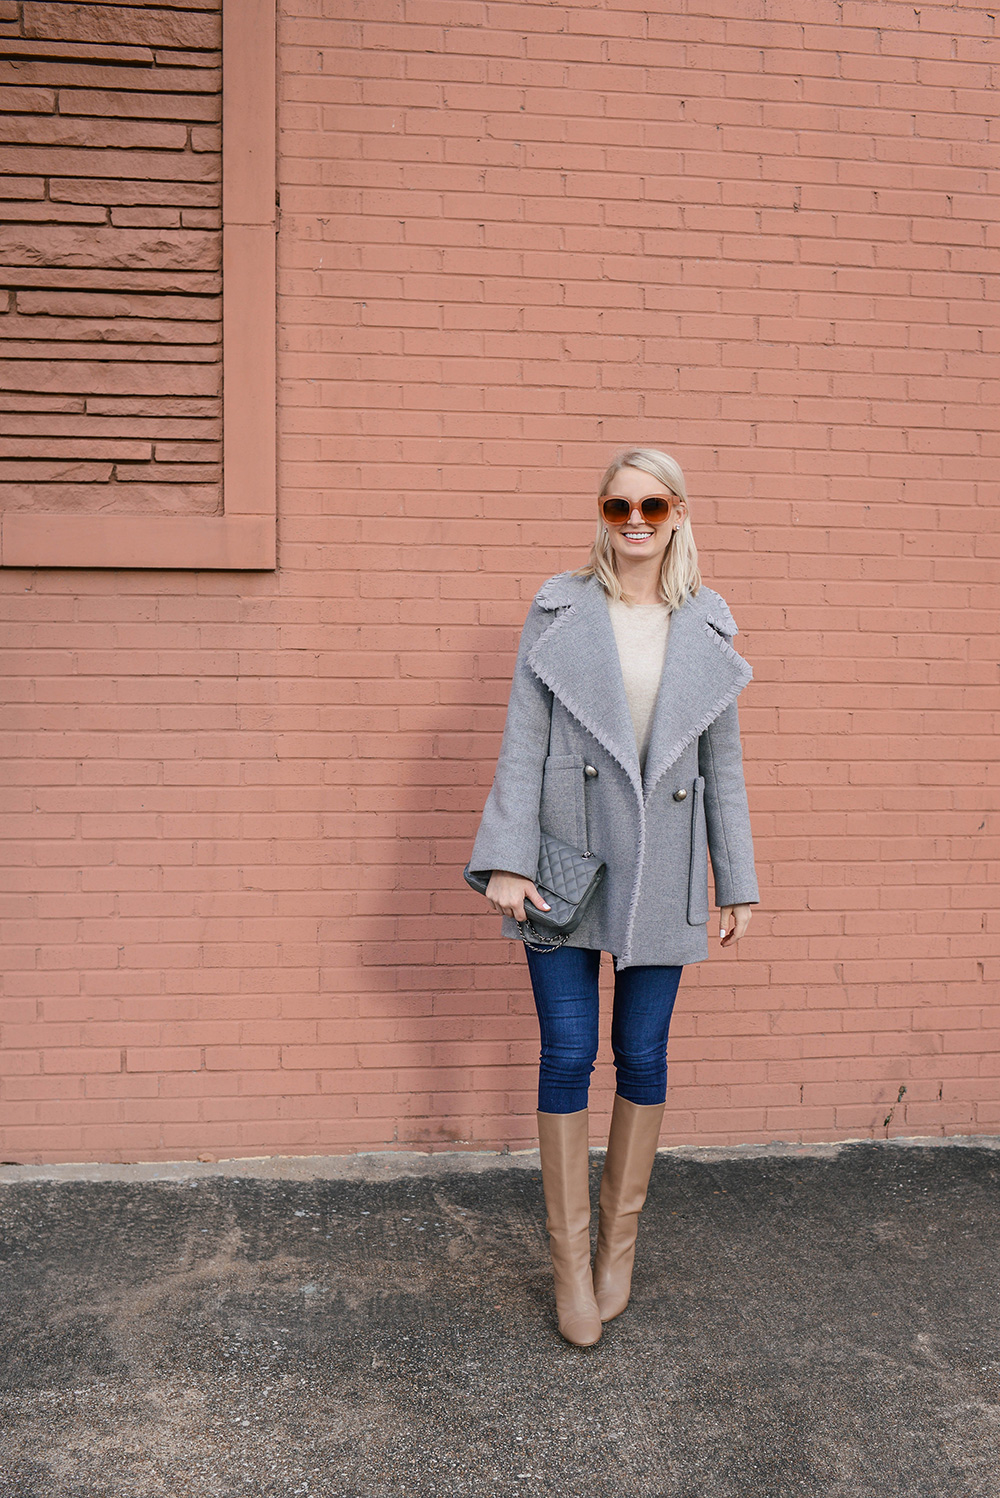 Celine Pink Sunglasses | Dallas Fashion Blogger